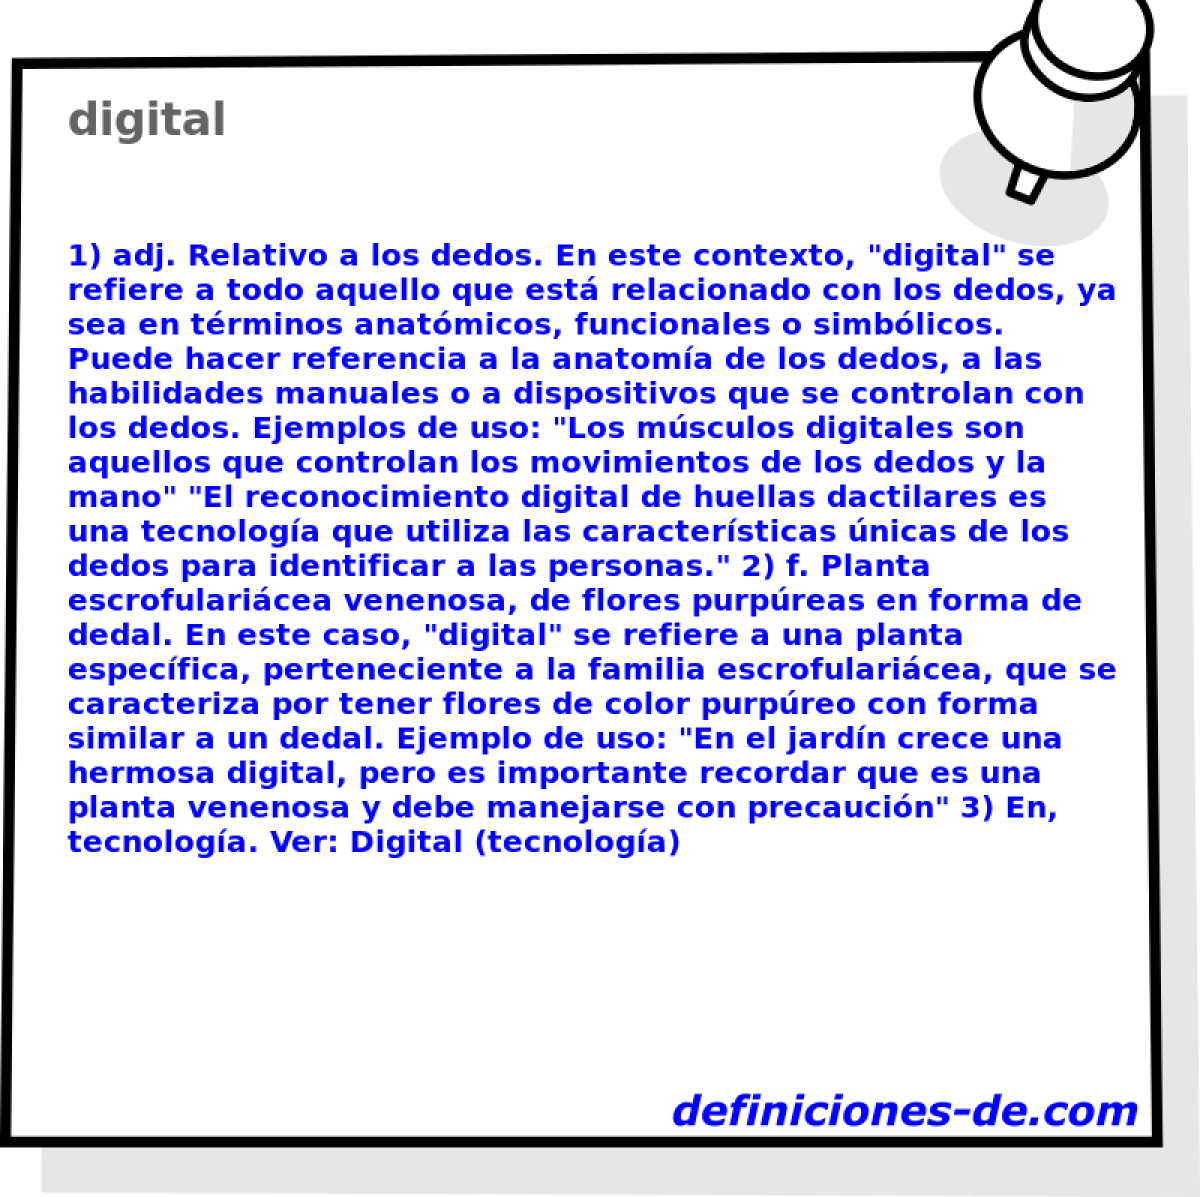 digital 